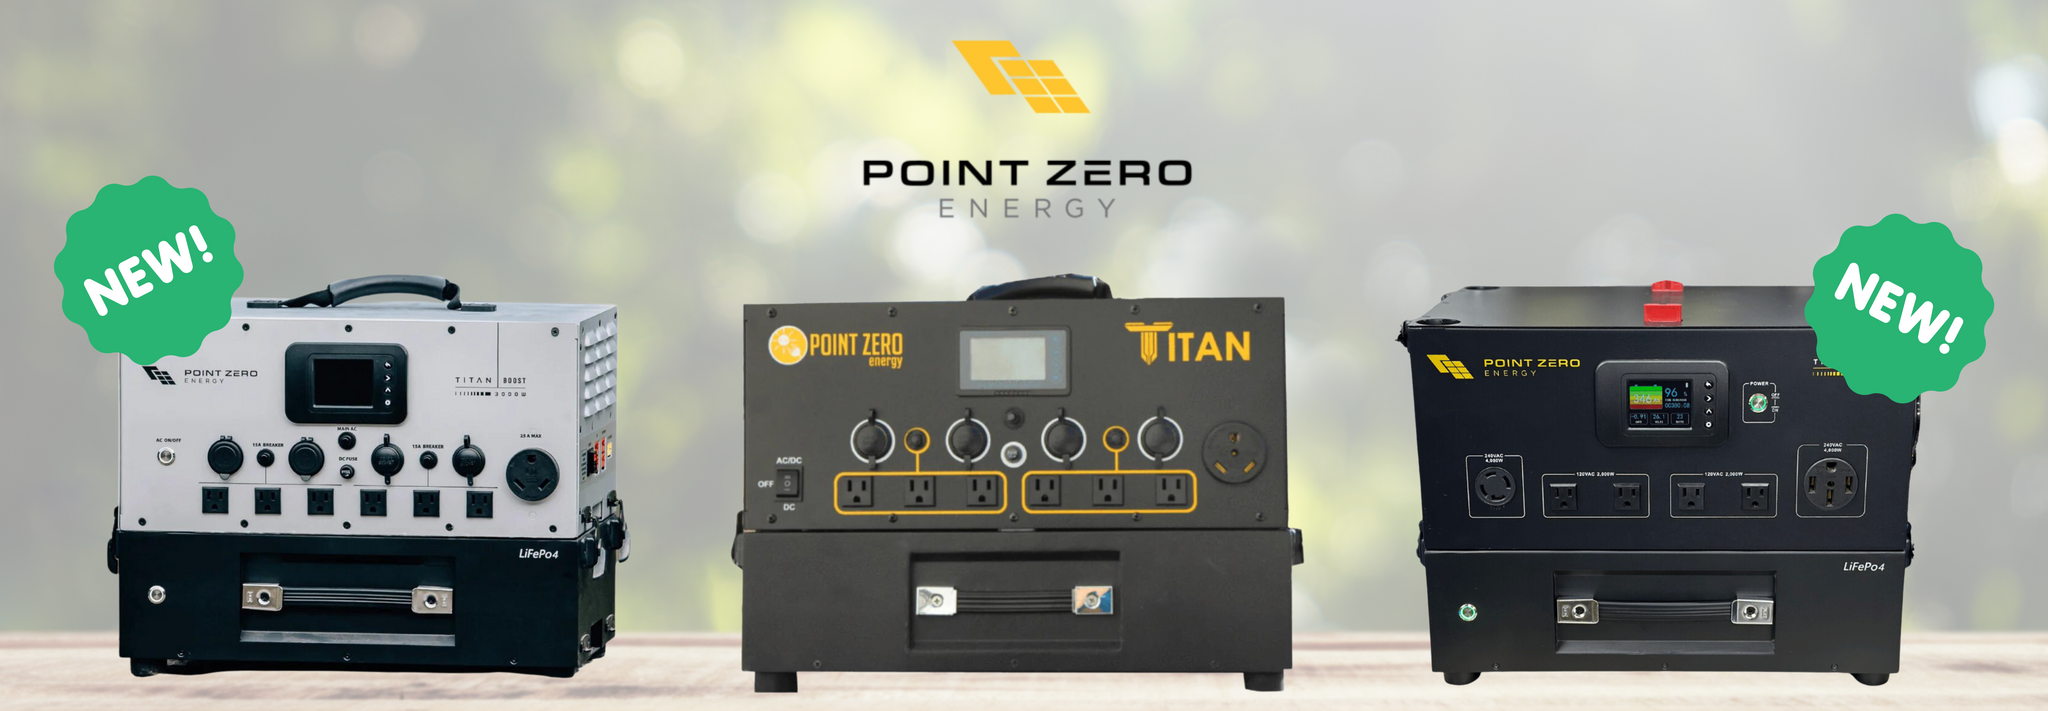 Titan Solar Generators by Point Zero Energy